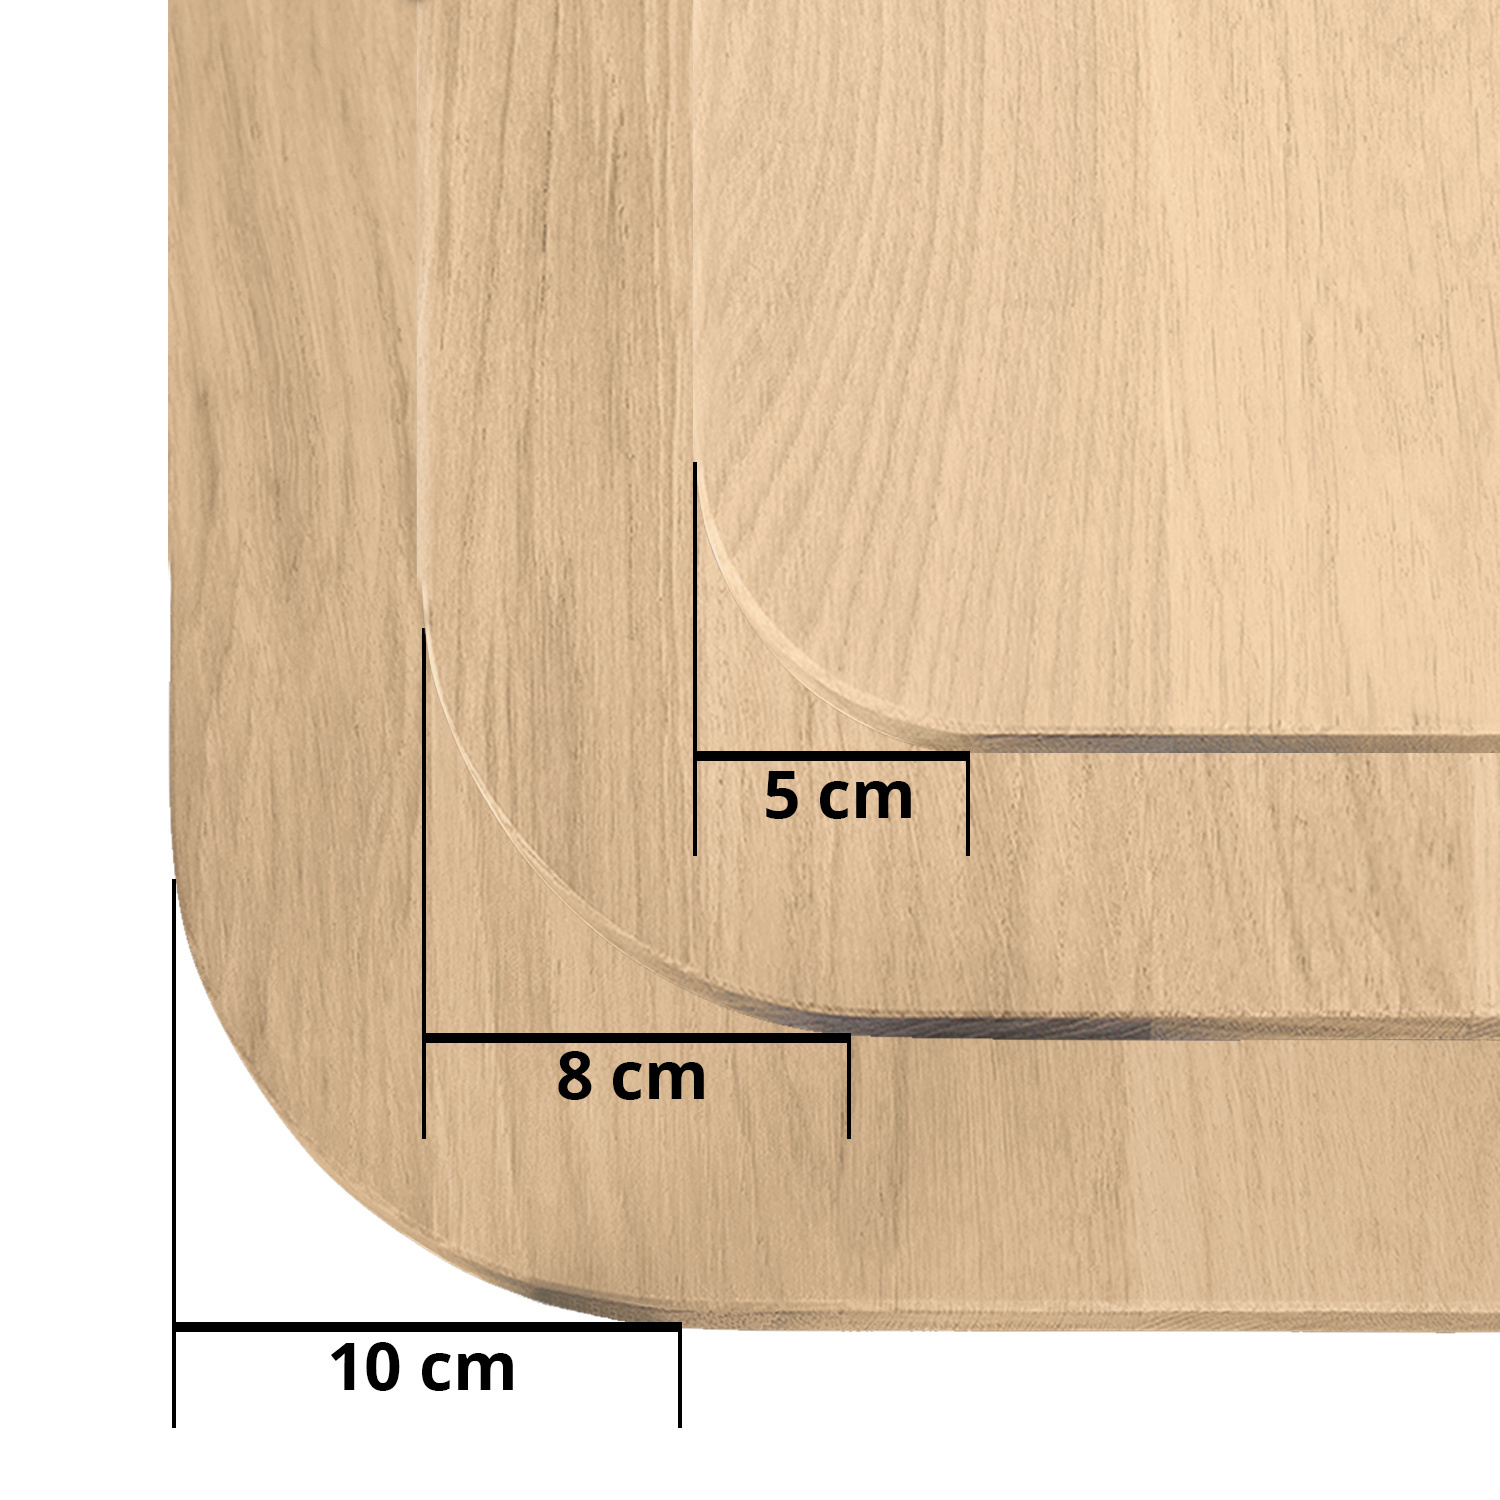  Eiken tafelblad met ronde hoeken - 4 cm dik (1-laag) - Diverse afmetingen - foutvrij Europees eikenhout - met brede lamellen (circa 10-12 cm) - verlijmd kd 8-12%